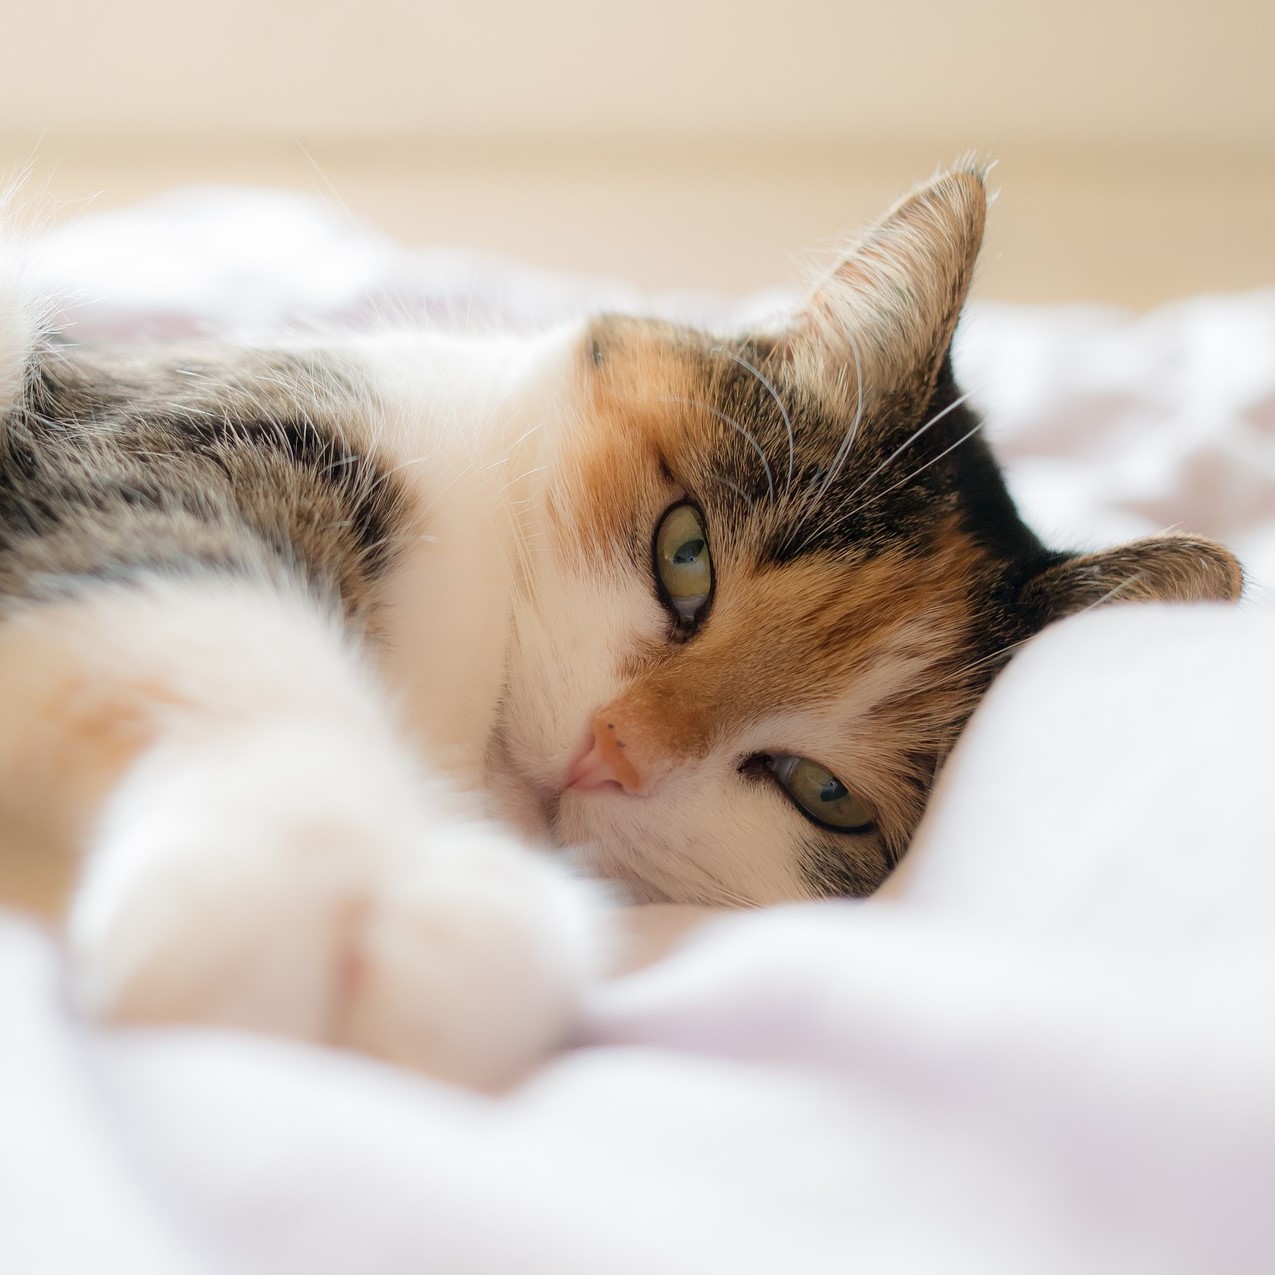 Insektenprotein als nierenschonende Eiweißquelle für Katzen